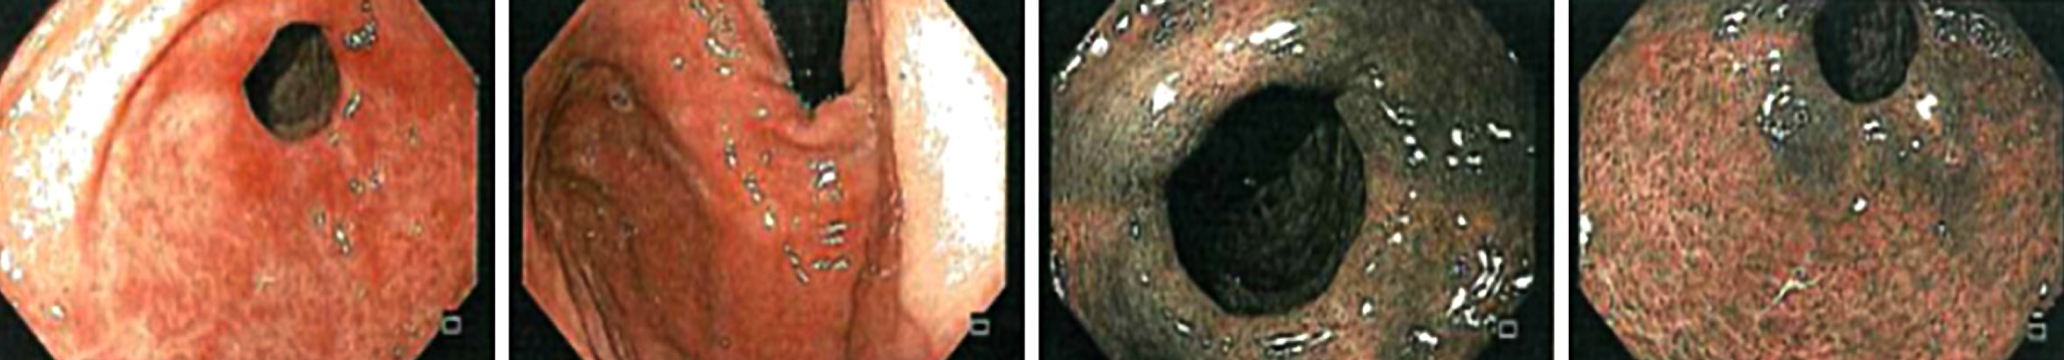 Figura 2. Esofagogastroduodenoscopia: mucosa del cuerpo con eritema en parches que no evidencia el borde atrófico ni hallazgos adicionales. Se realiza una revisión con imagen de banda estrecha (NBI) para permitir la toma de biopsias